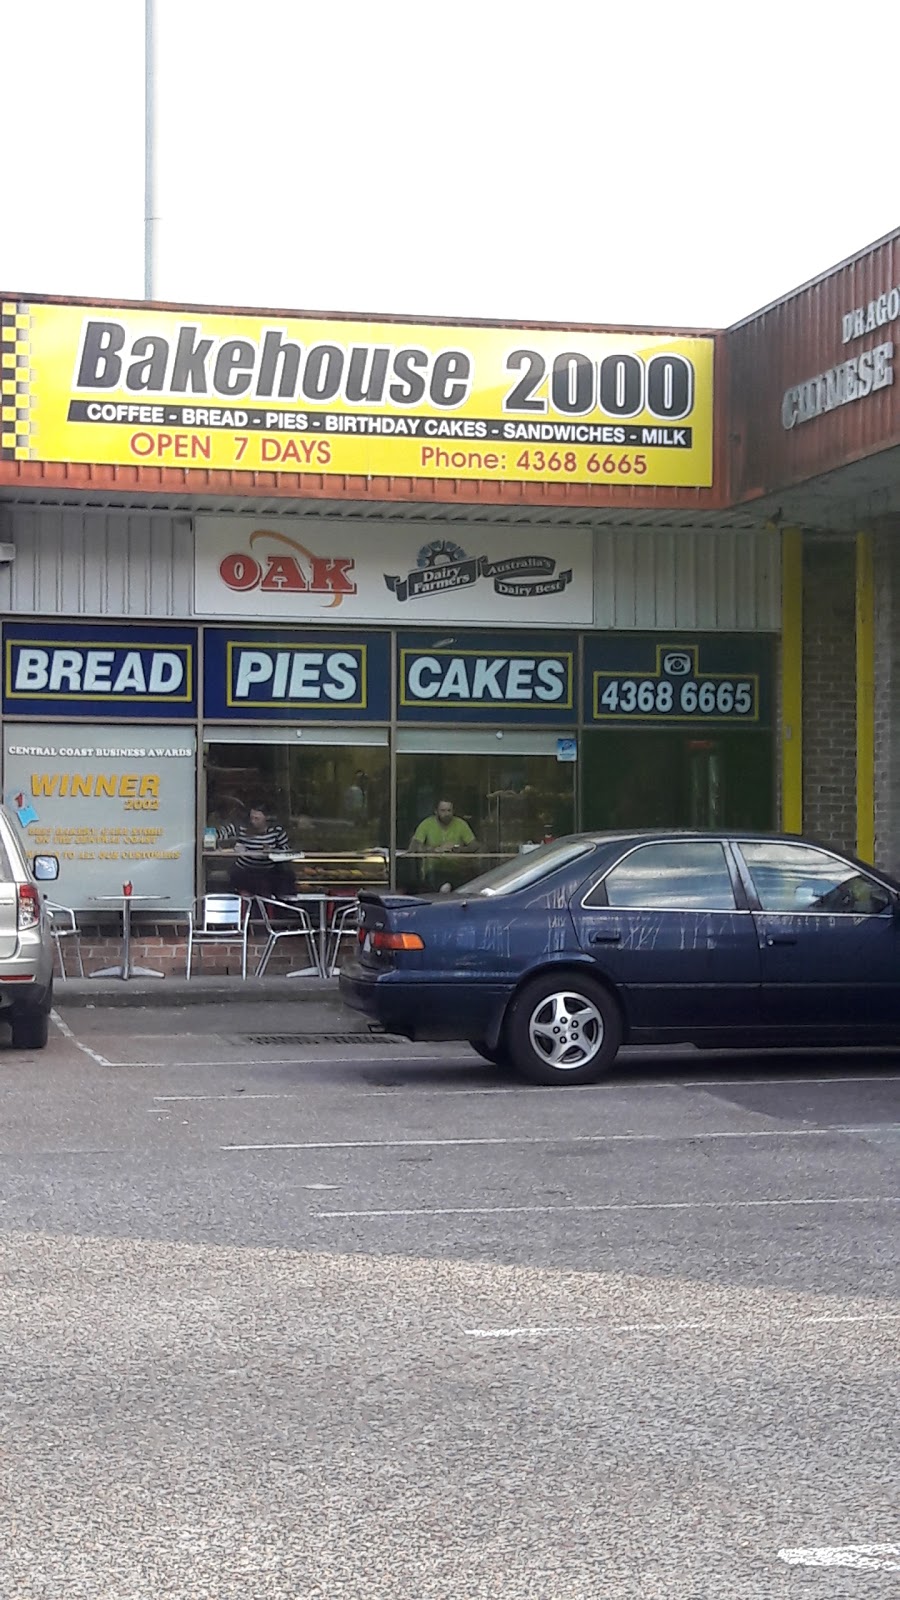 BAKEHOUSE 2000 | bakery | 36 Empire Bay Dr, Kincumber NSW 2251, Australia | 0243686665 OR +61 2 4368 6665